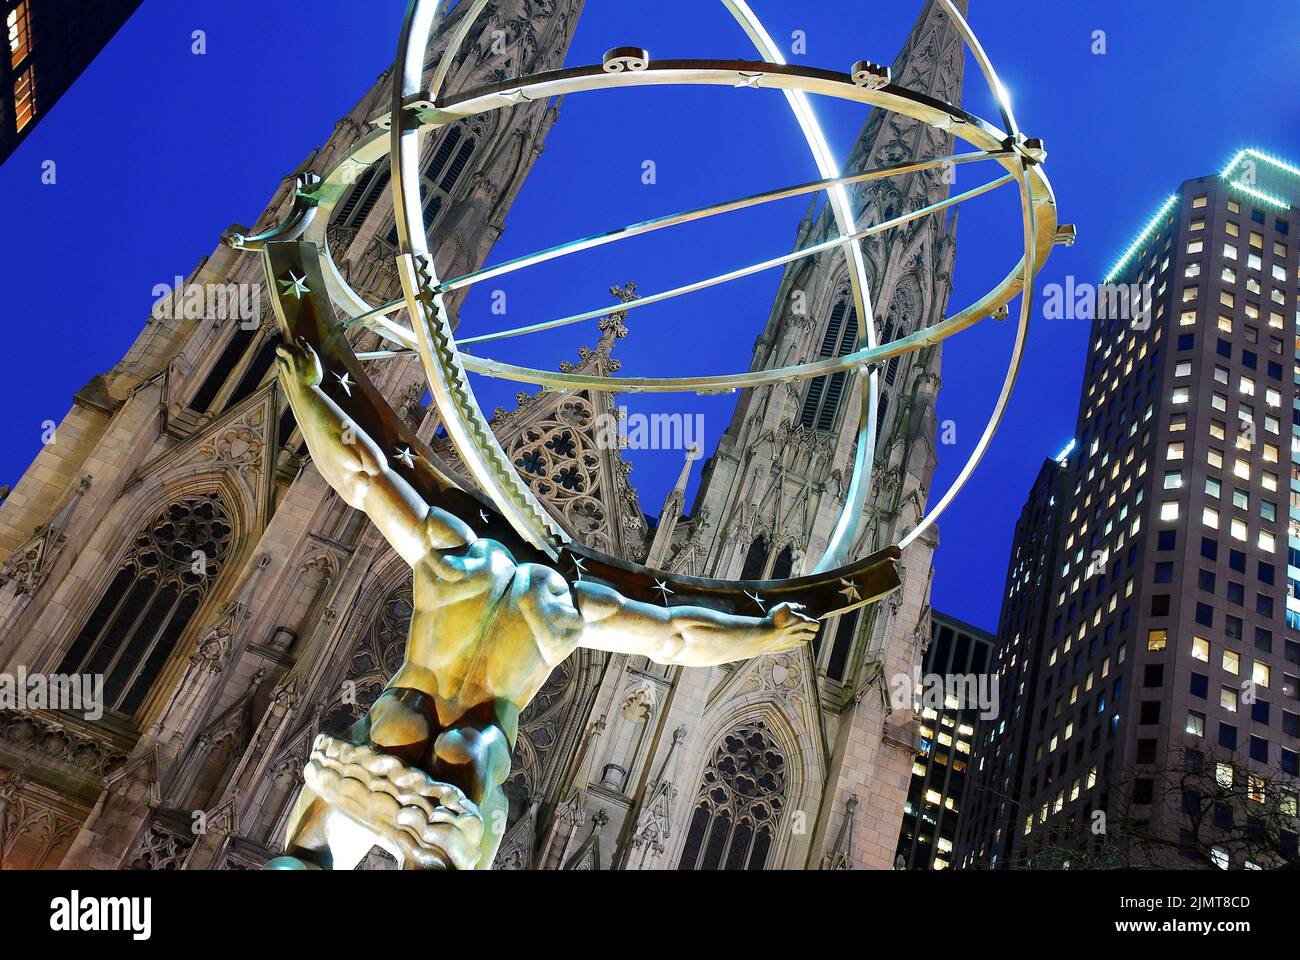 Una escultura del dios griego Atlas que sostiene el mundo se encuentra en el Rockefeller Center frente a la Catedral de San Patricio en la ciudad de Nueva York Foto de stock